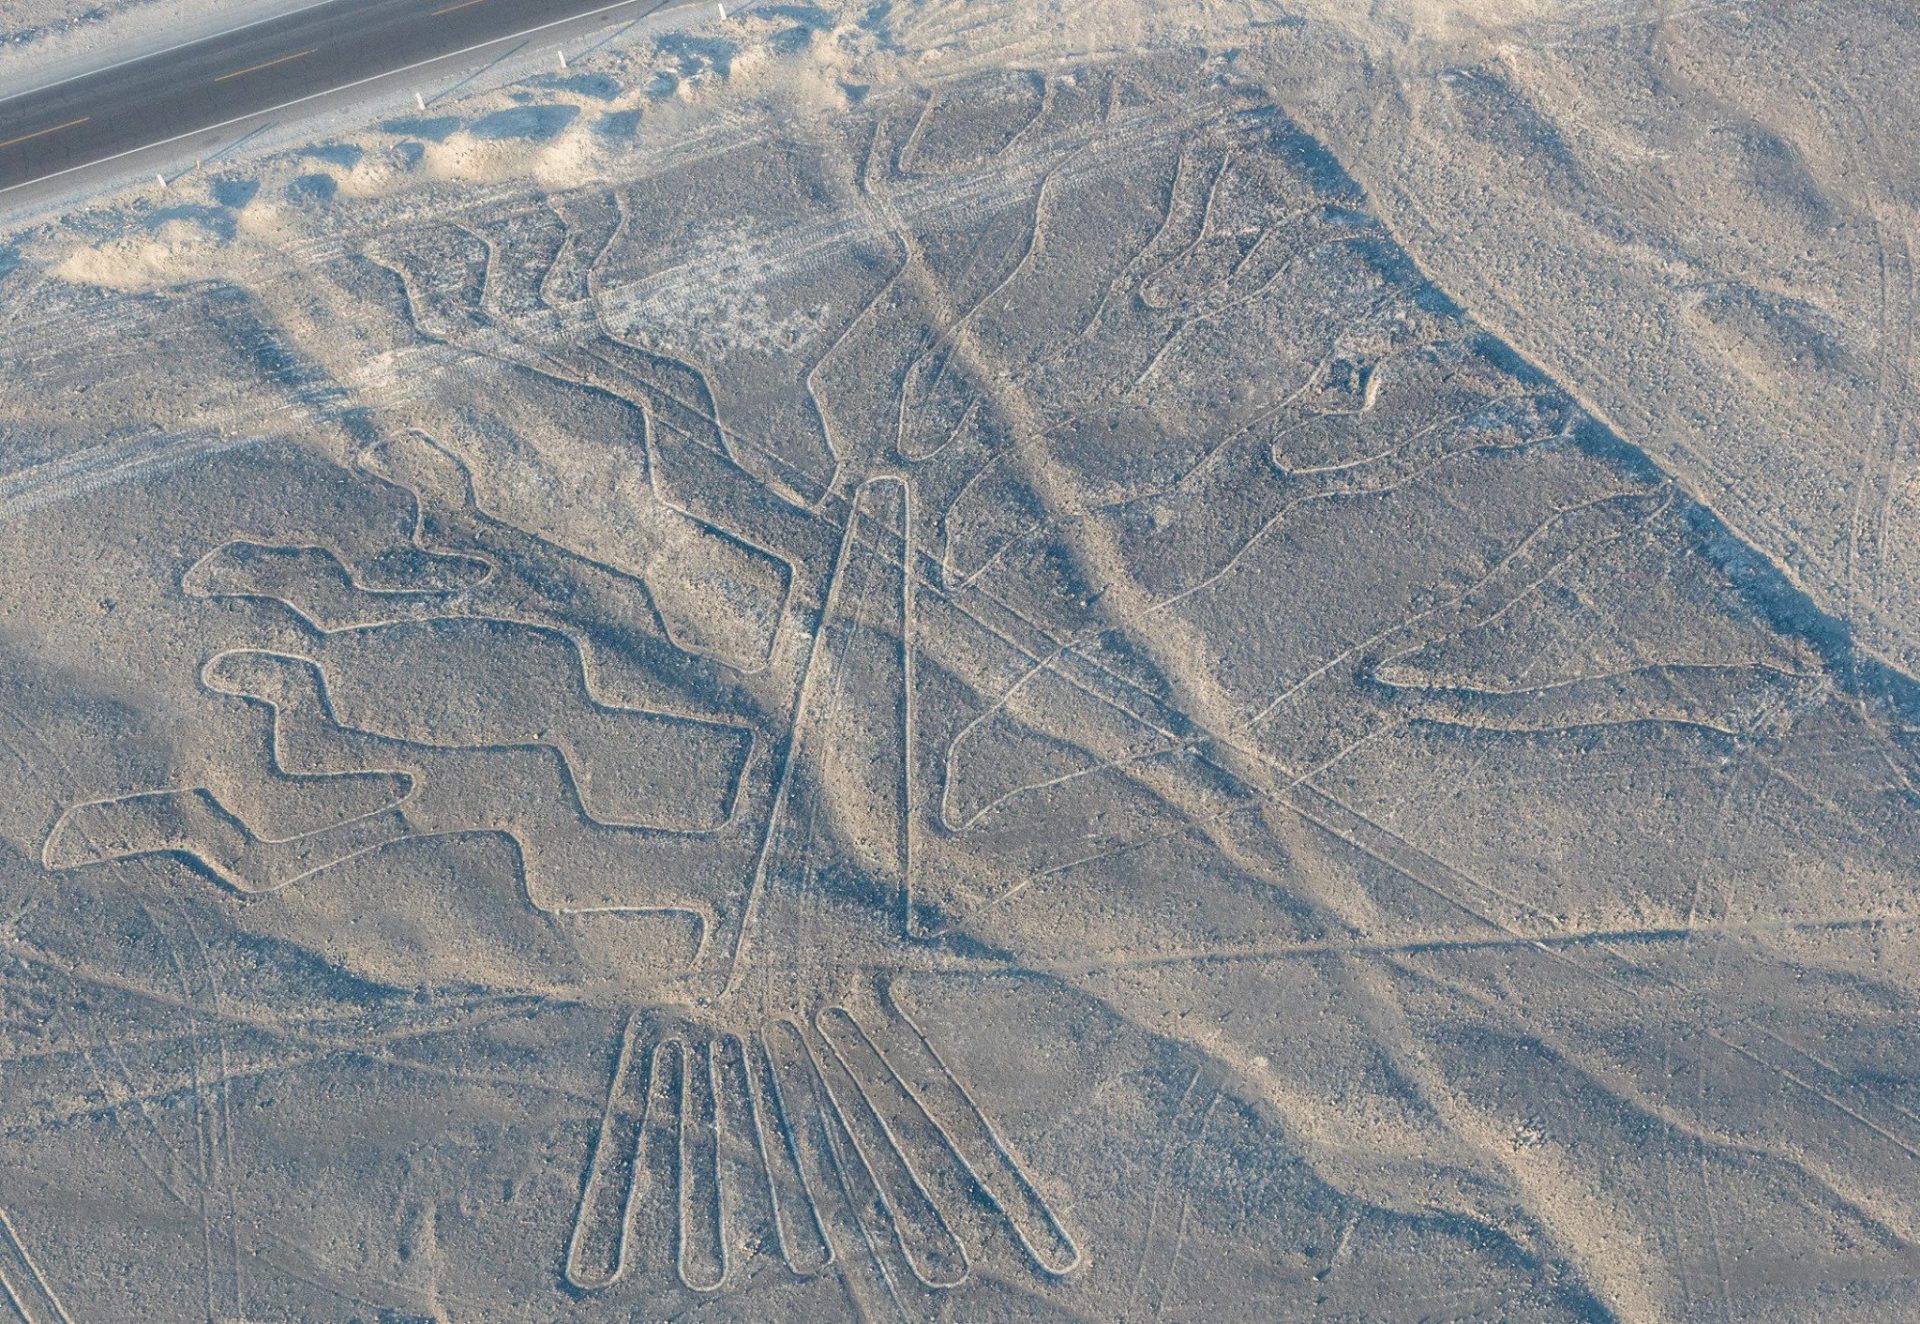 Panduan perjalanan Nazca Lines